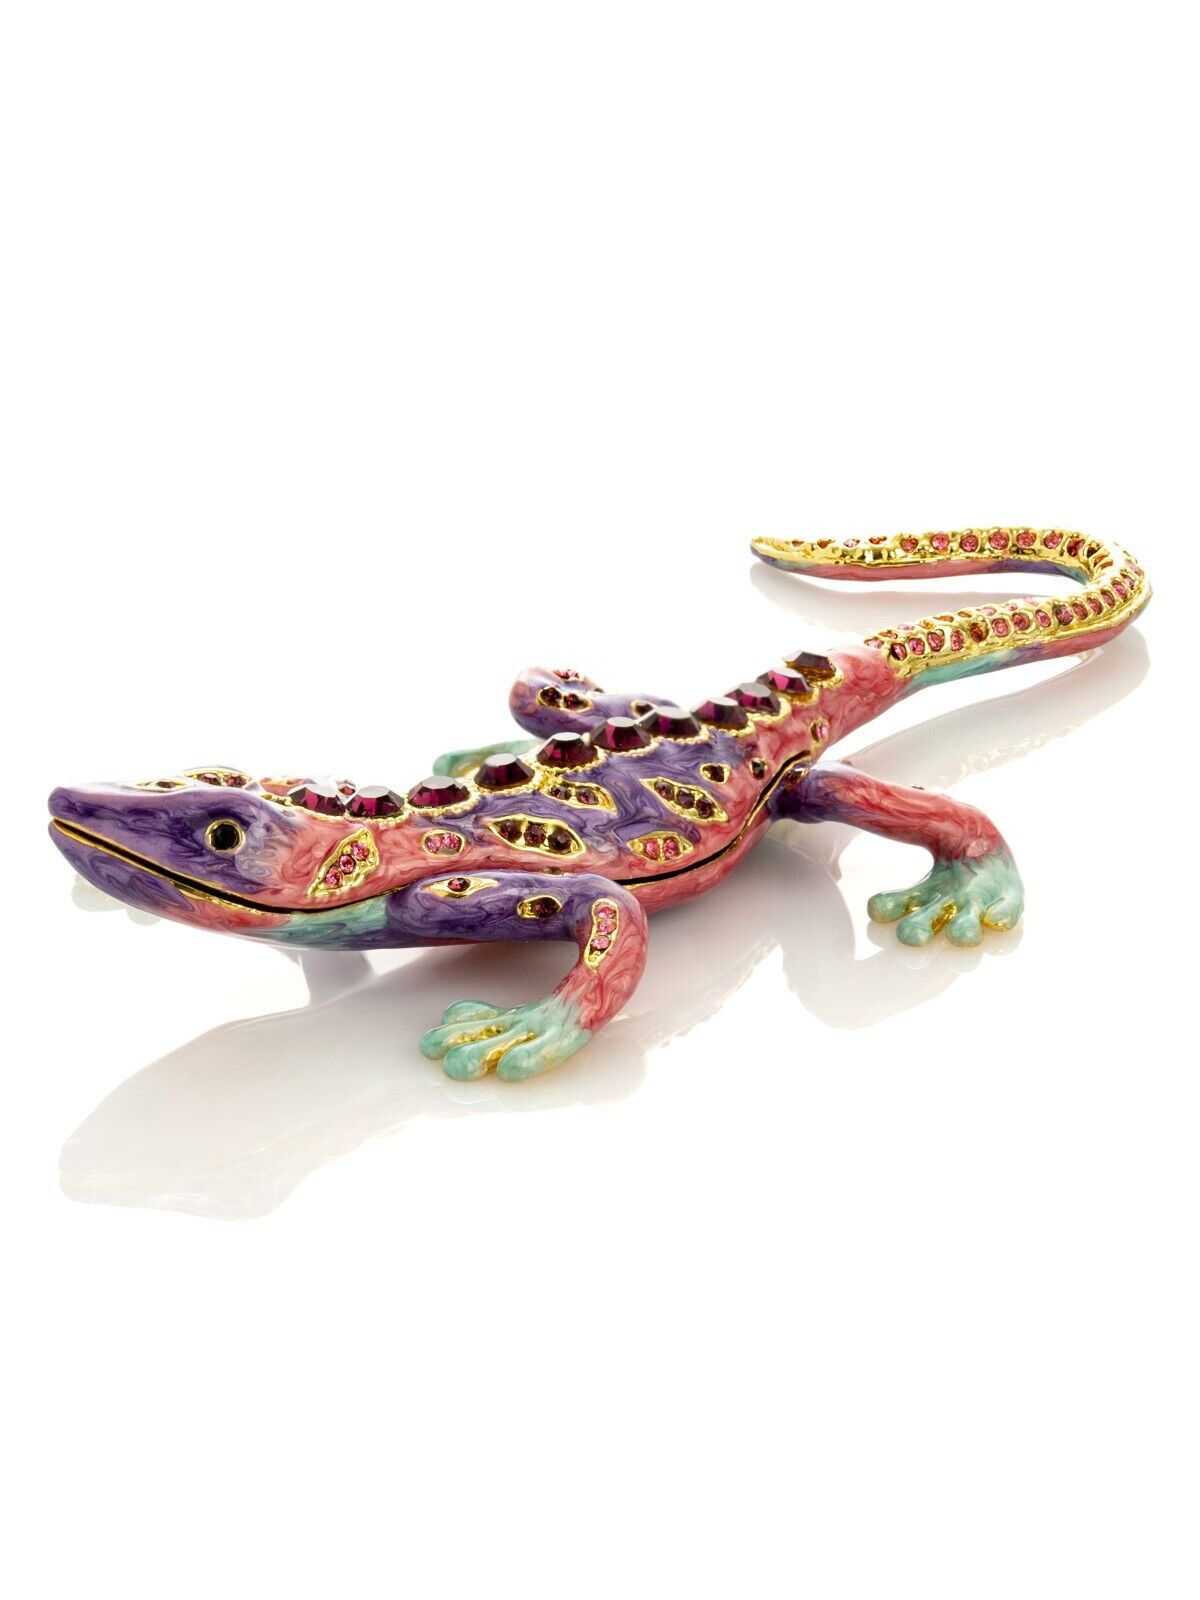 Keren Kopal Hand made Lizard Trinket box  Decorated with Austrian Crystals